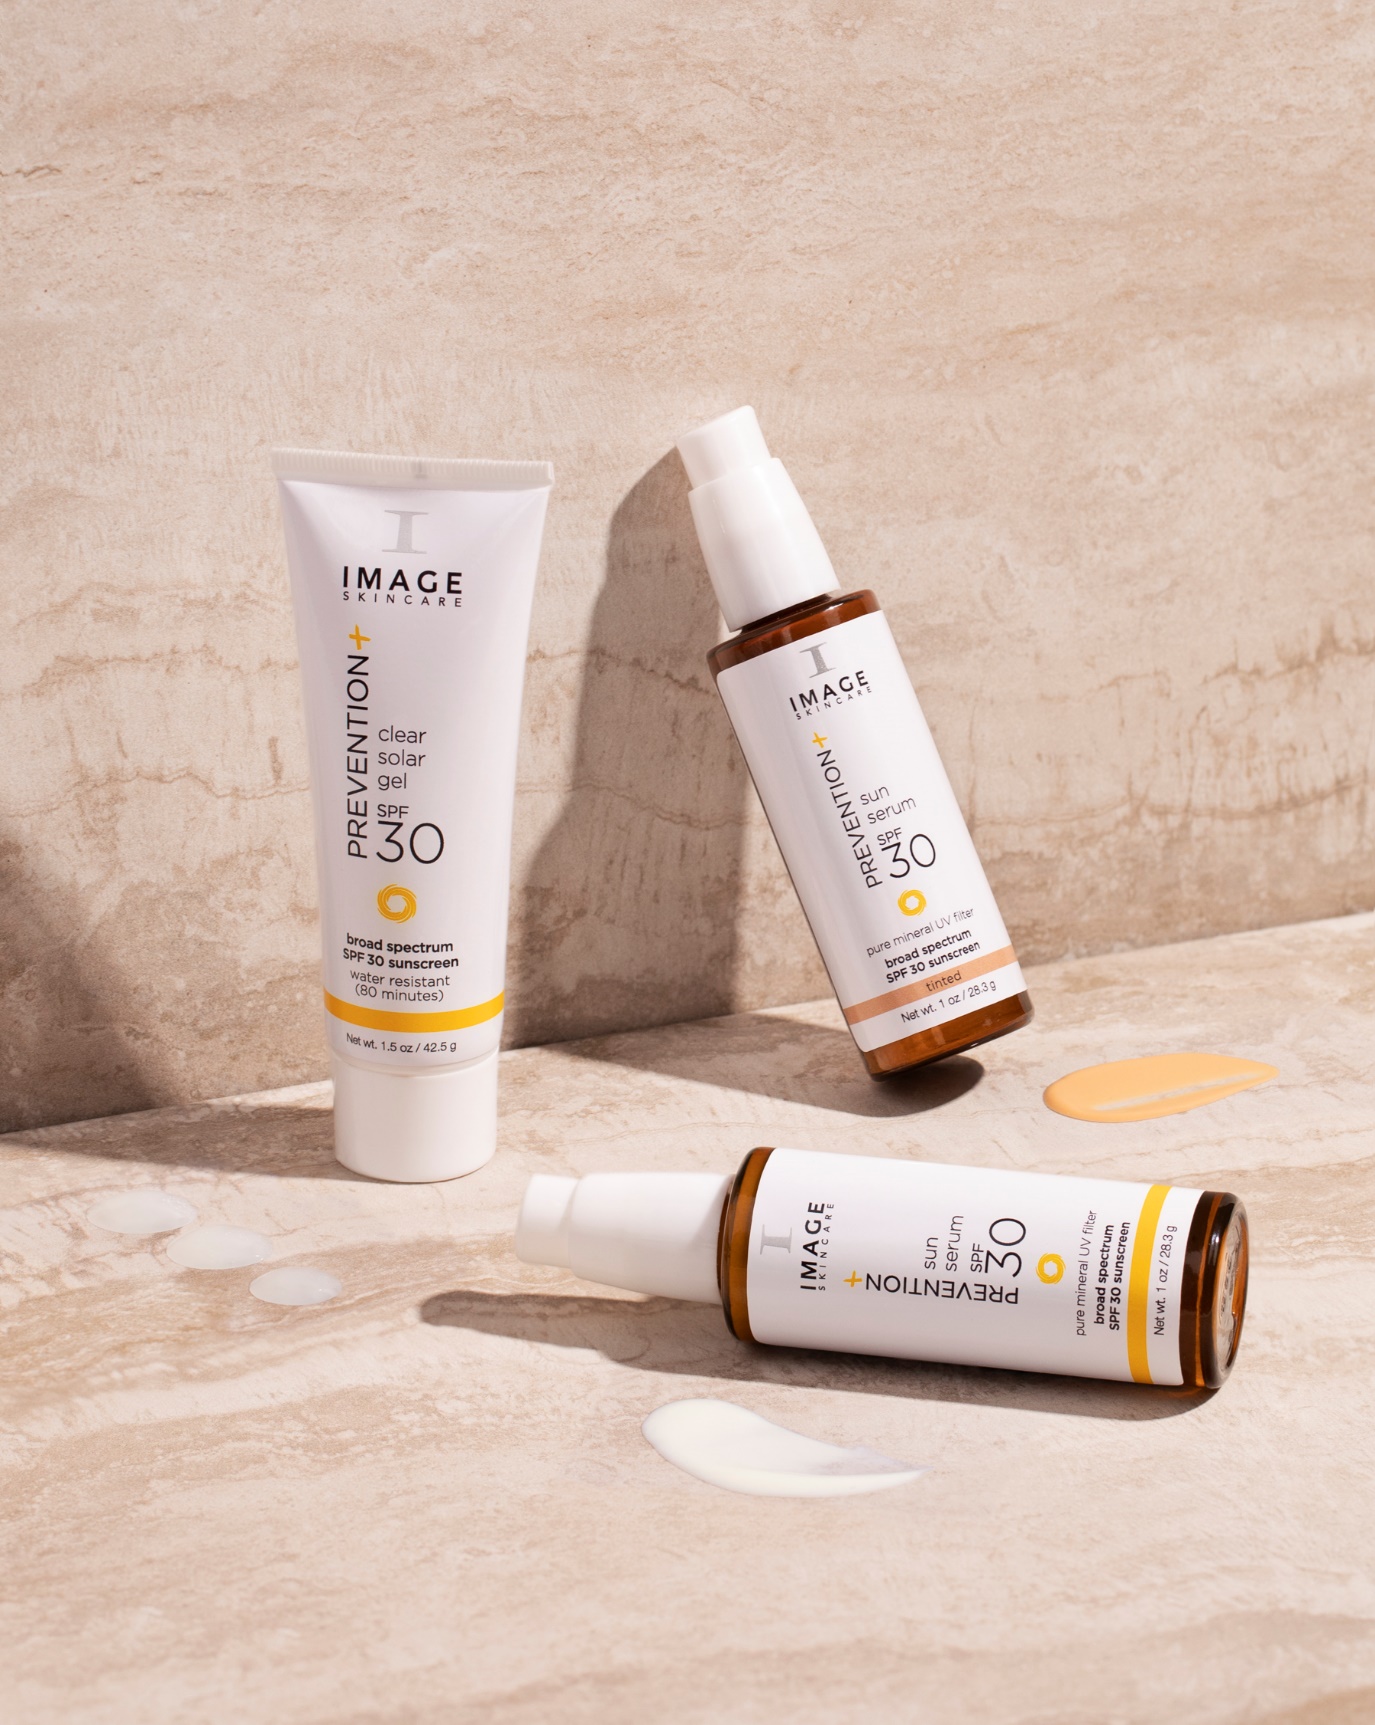 Bảo vệ da với serum và gel của dòng sản phẩm chống nắng mới: Prevention+ IMAGE Skincare - 1